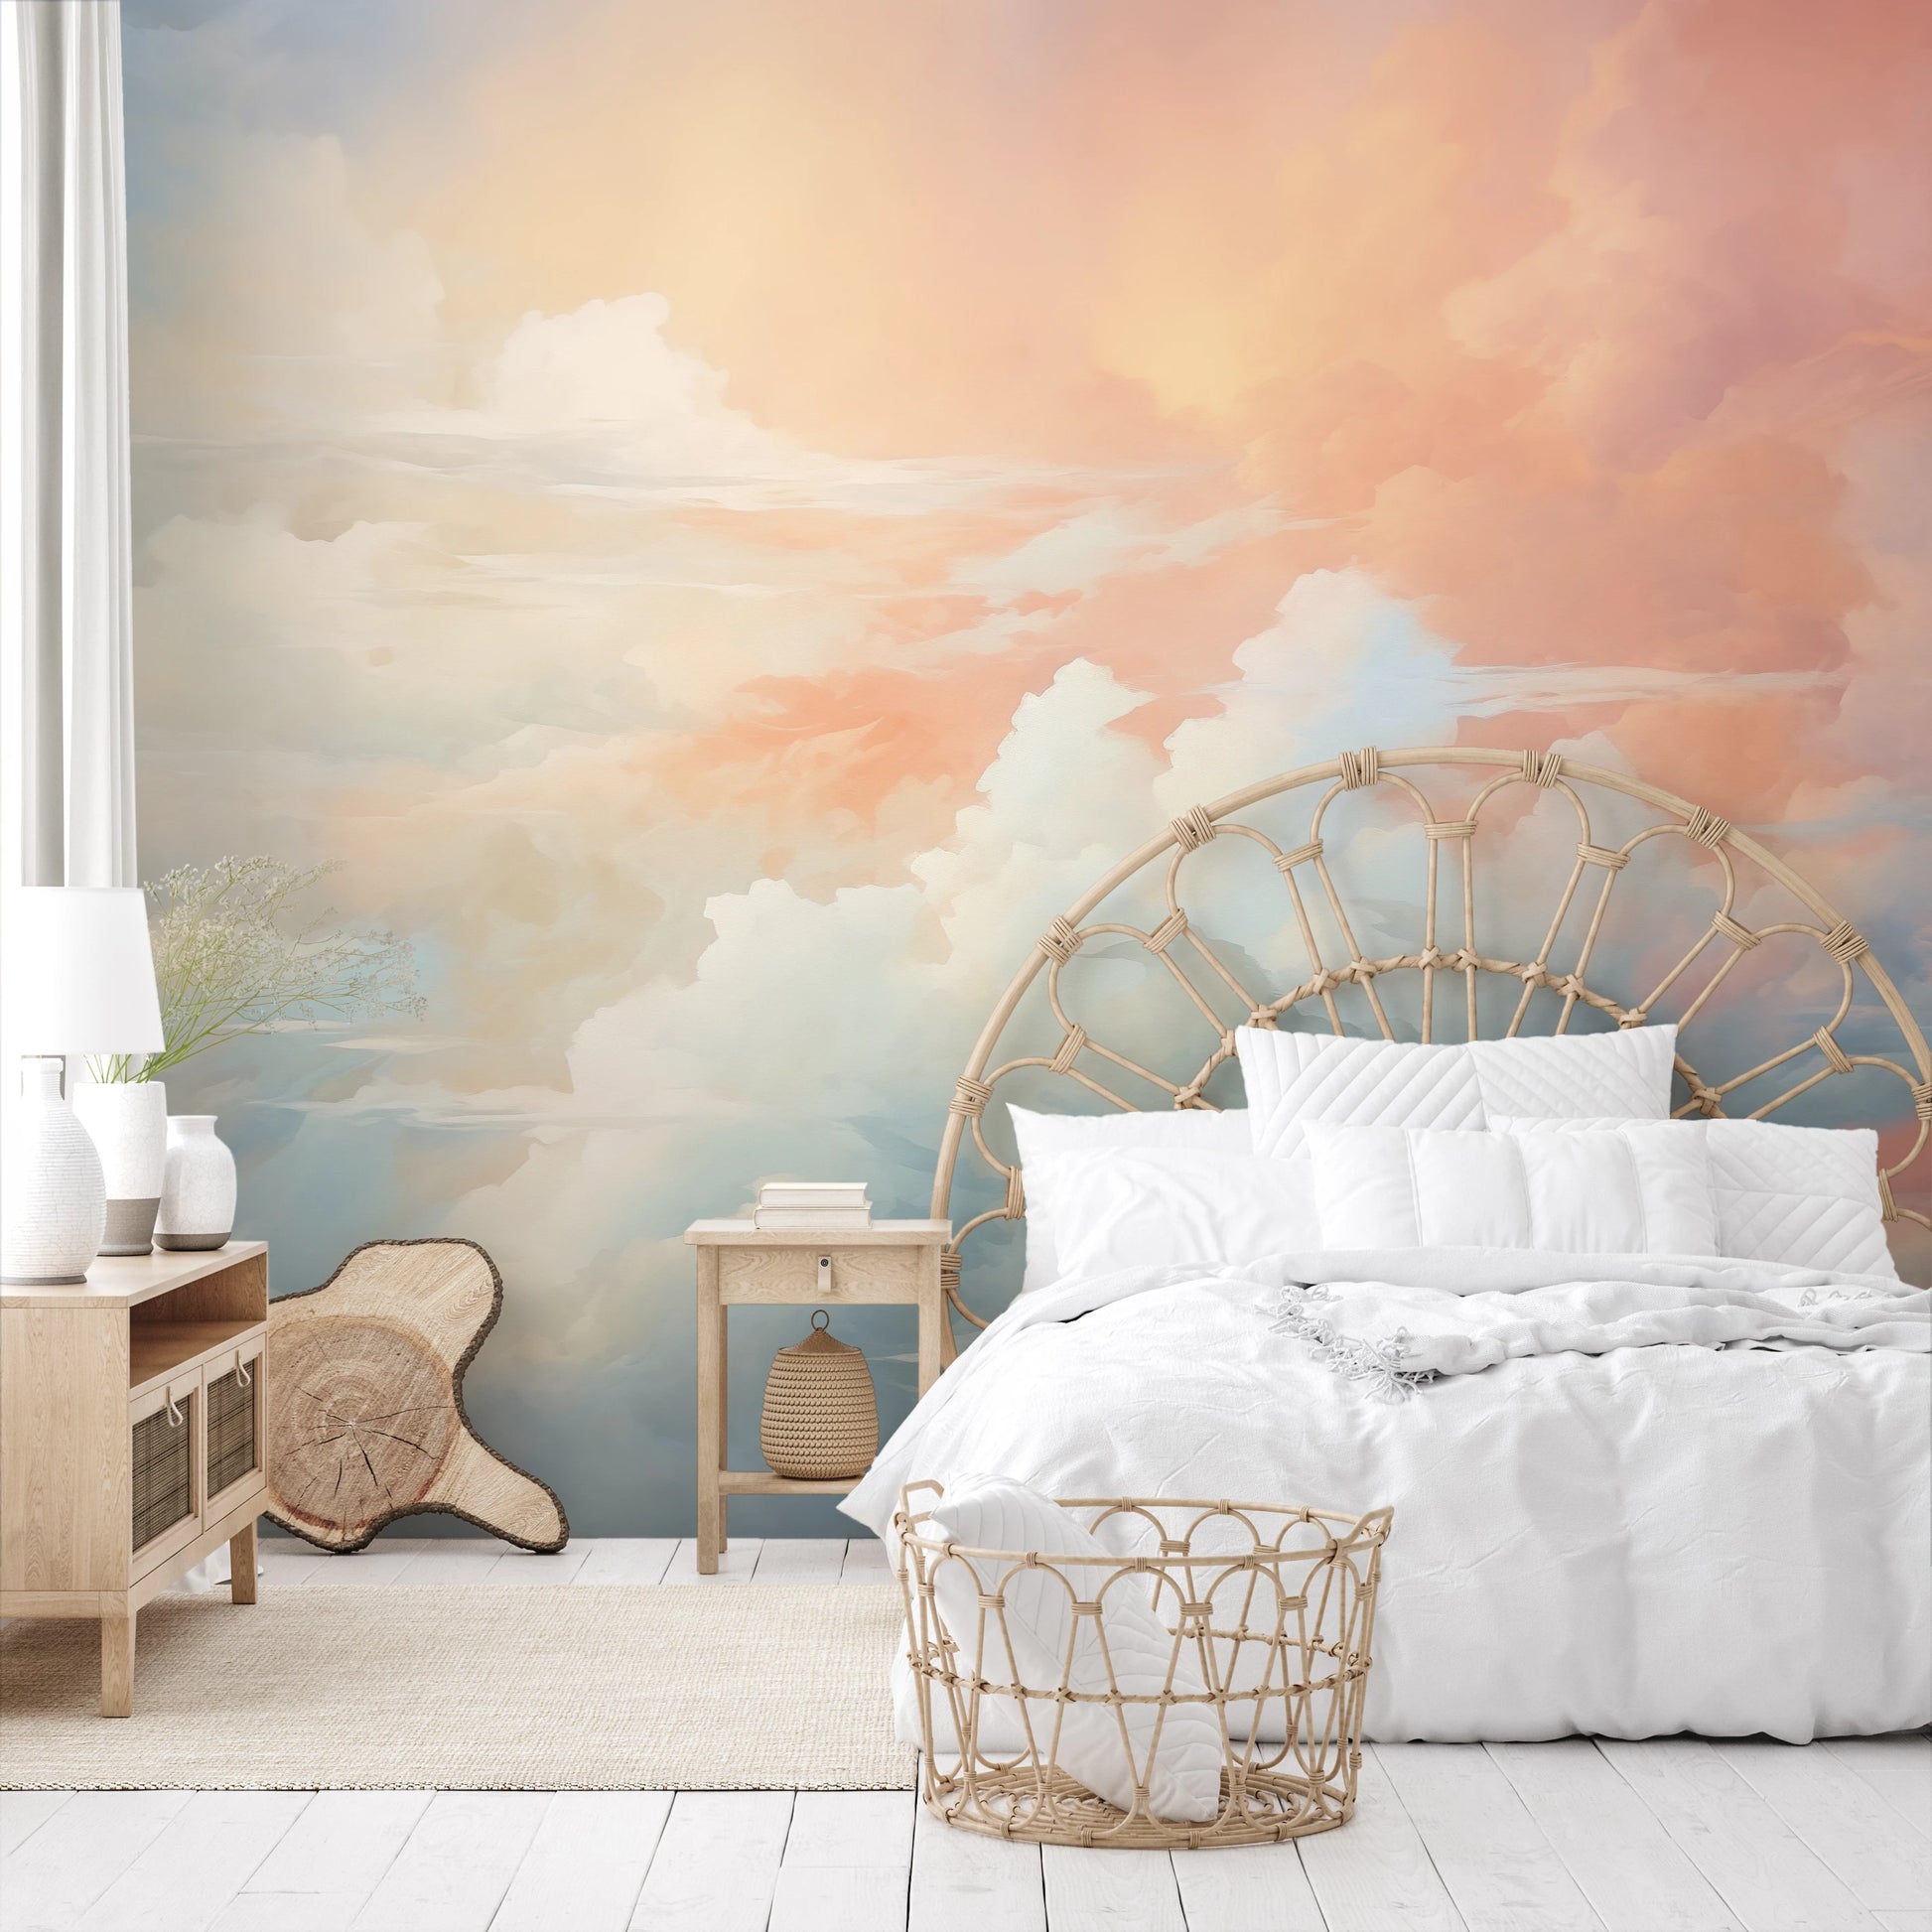 Fototapeta malowana o nazwie Sunrise Canvas pokazana w aranżacji wnętrza.